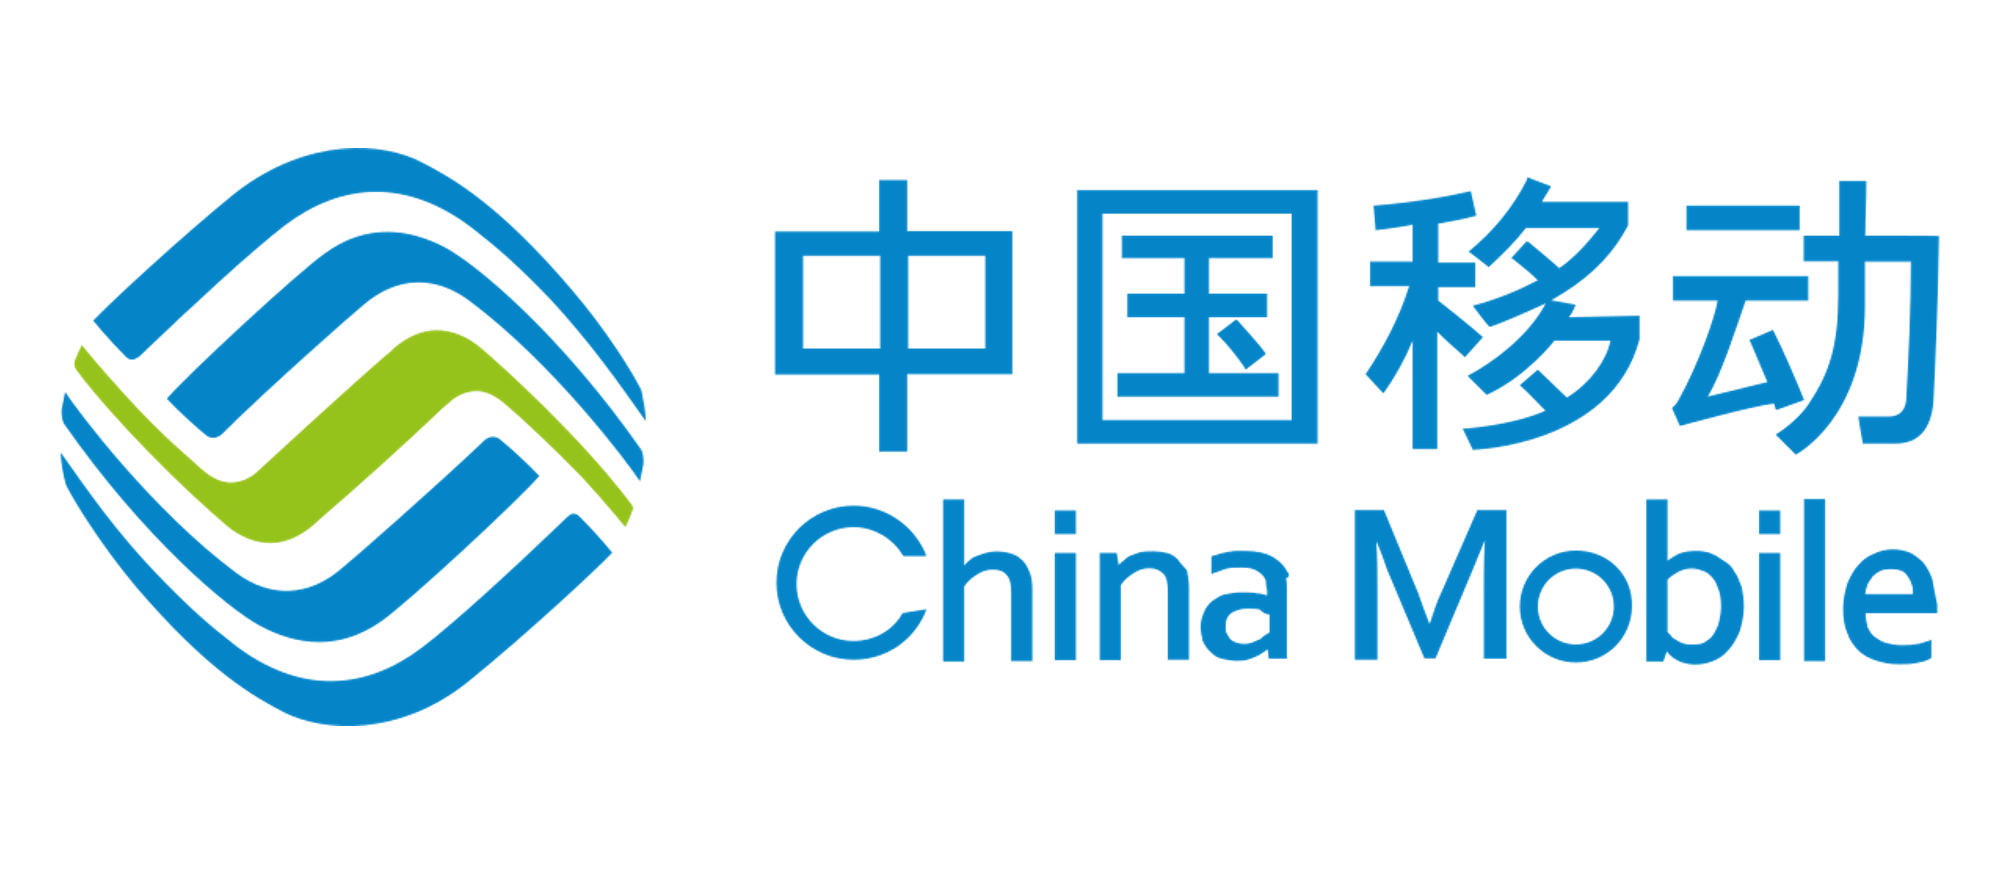 China_Mobile